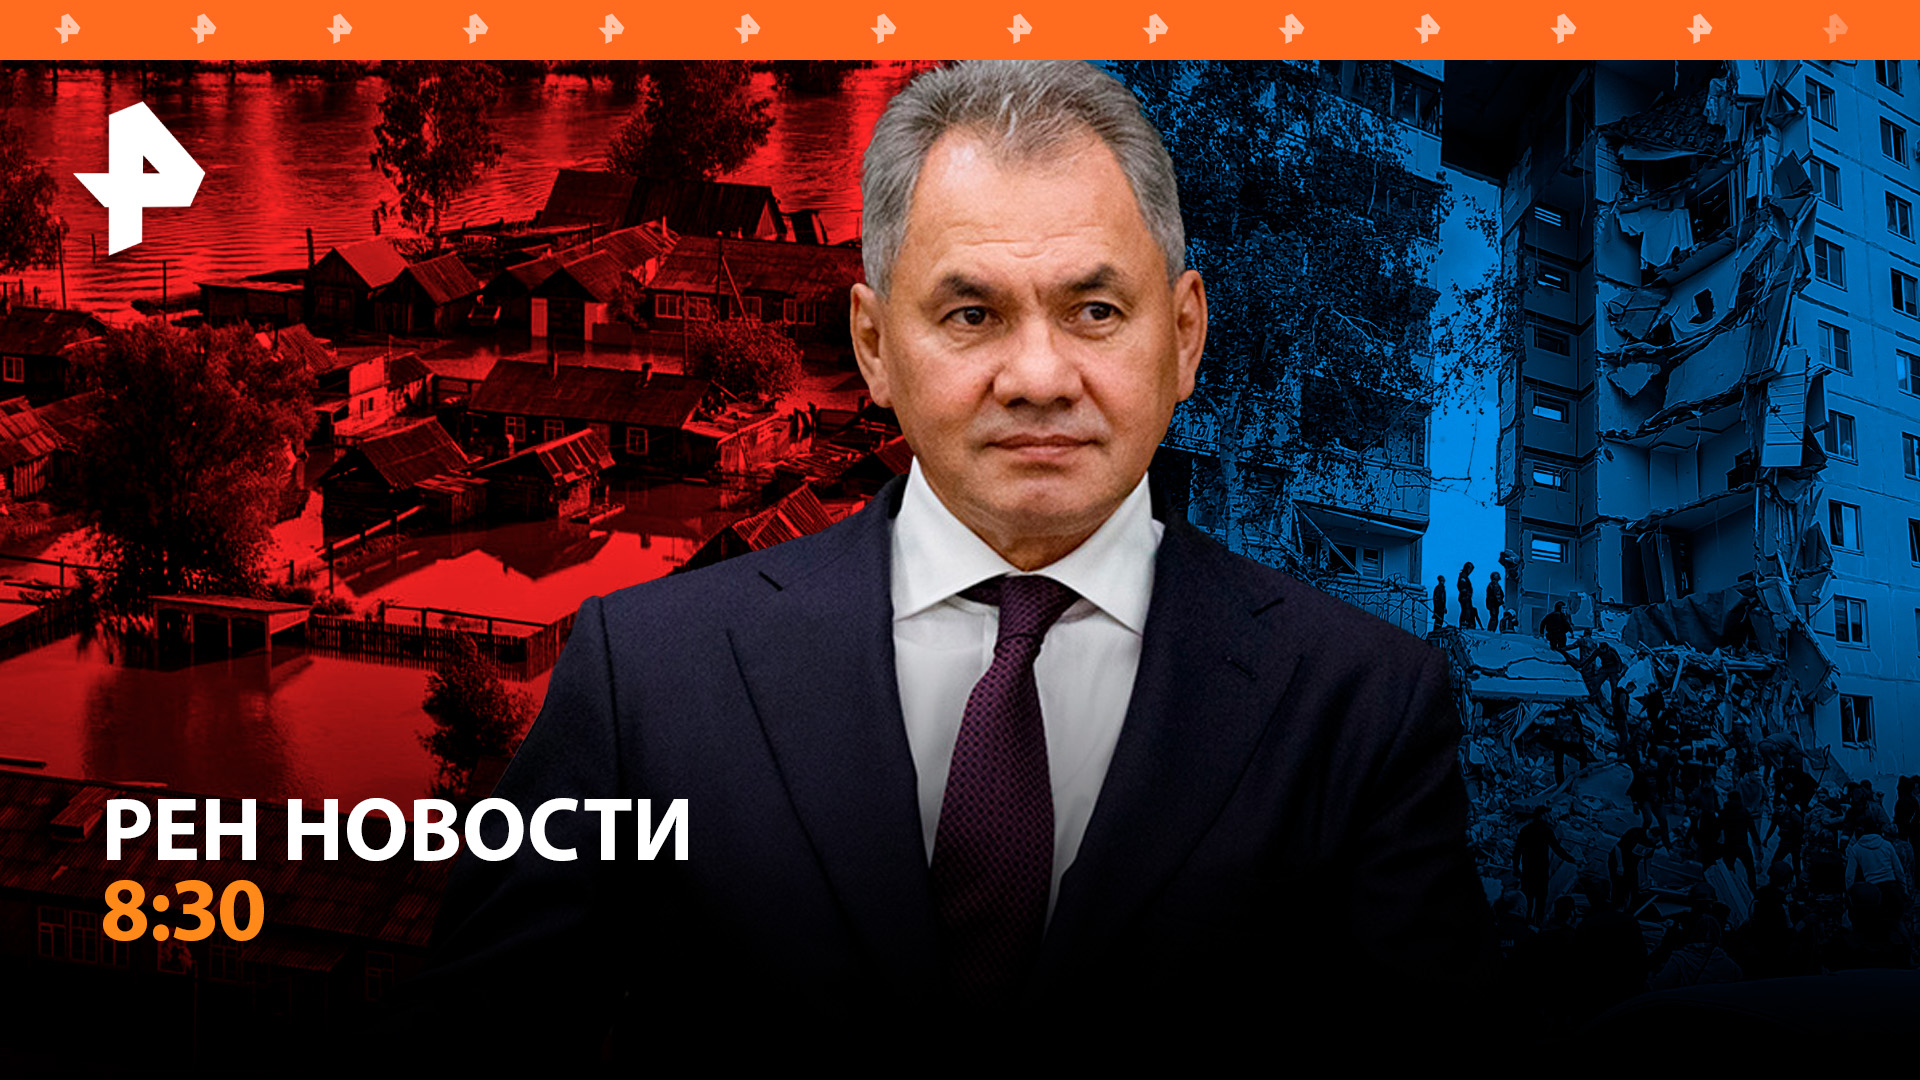 Задержание шпиона СБУ, Шойгу больше не министр обороны /  РЕН Новости 8:30, 13.05.24